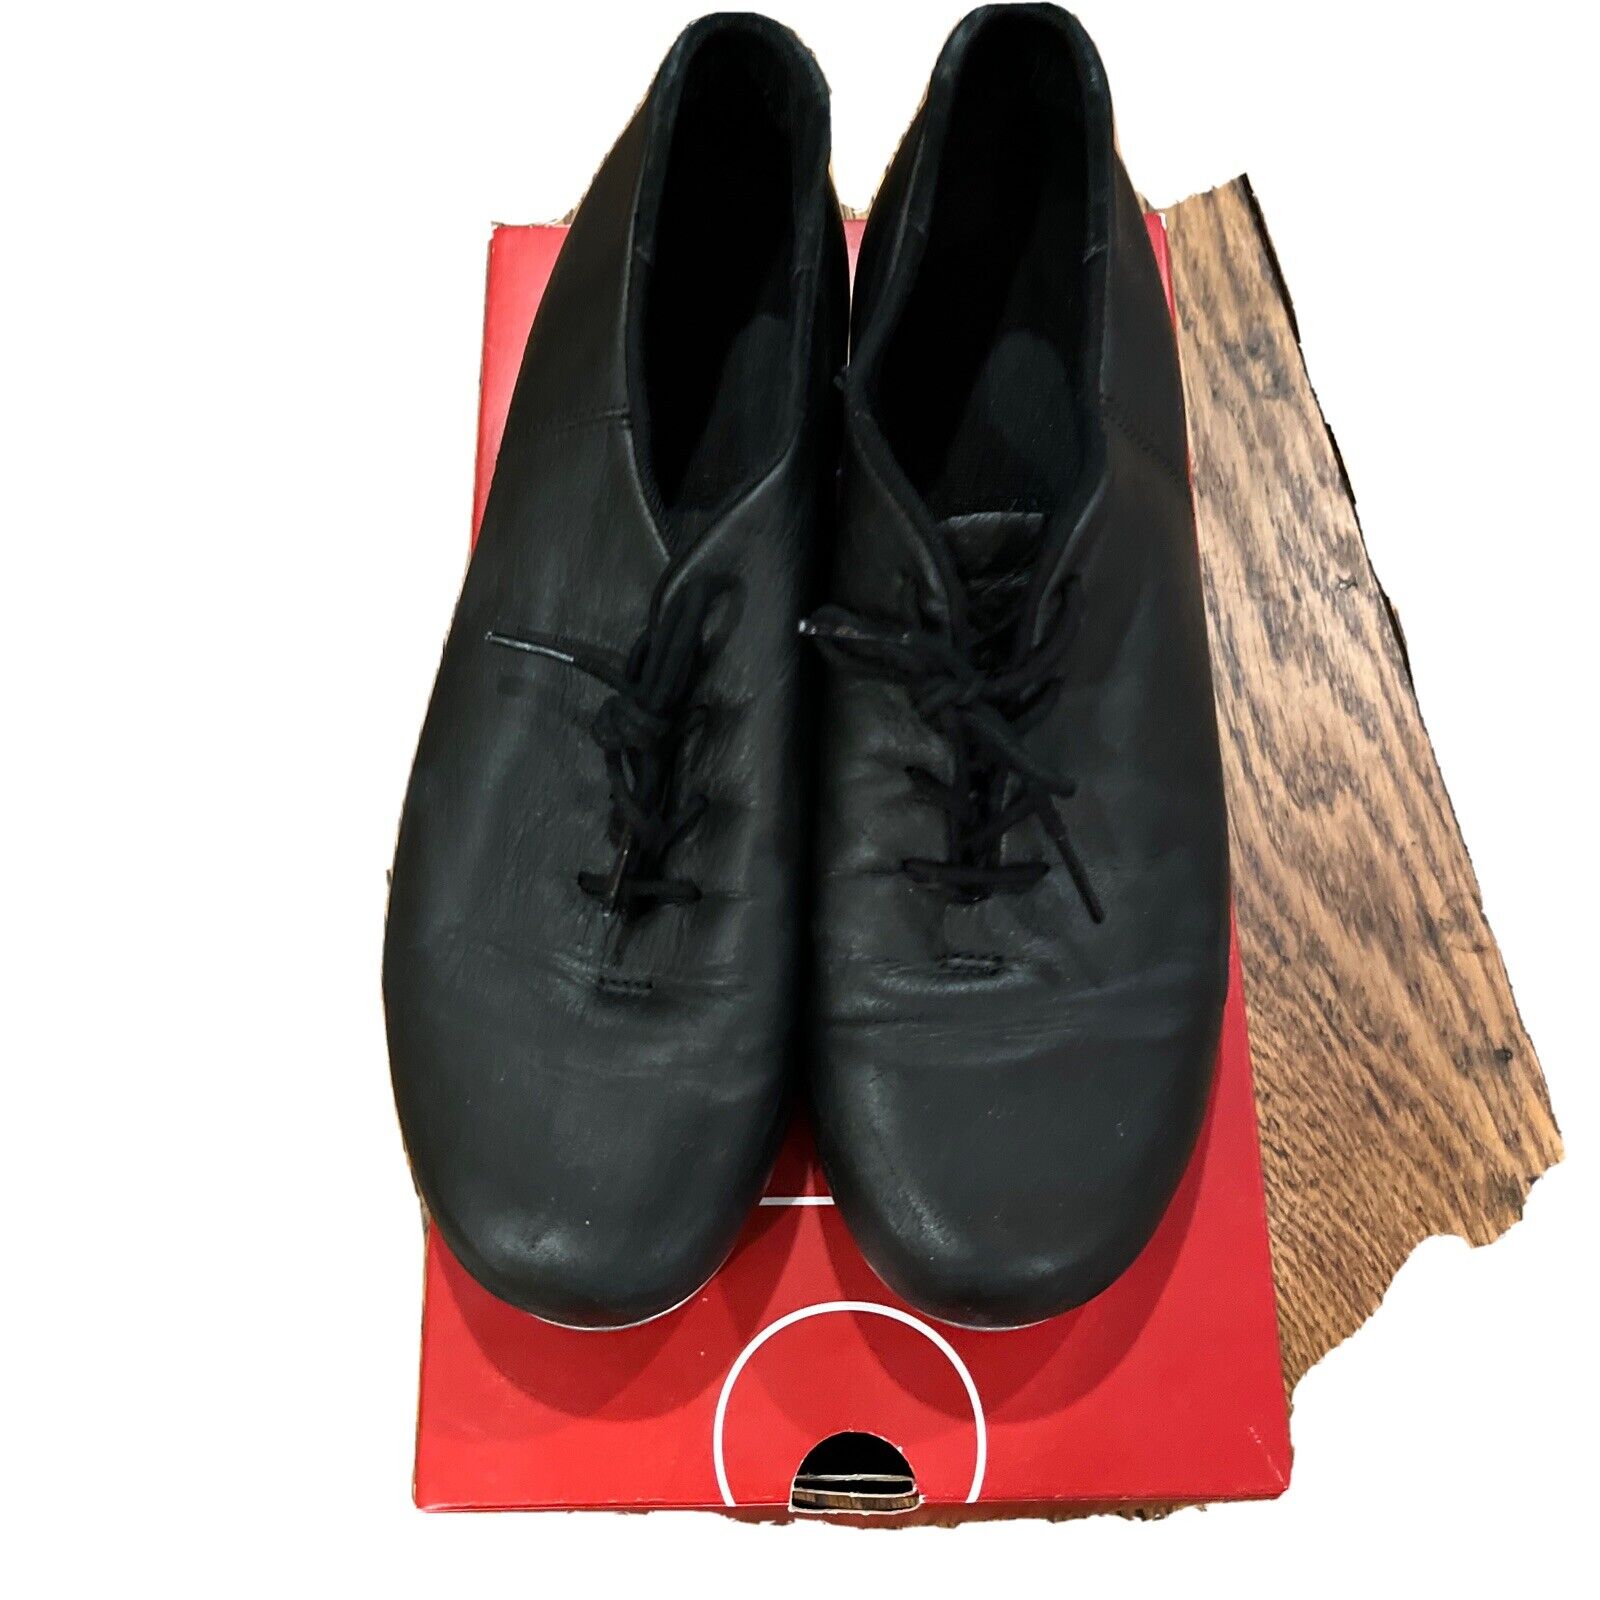 Euc Womens Capezio Dance Tap Shoes Black Oxford Lace Up Size 9m